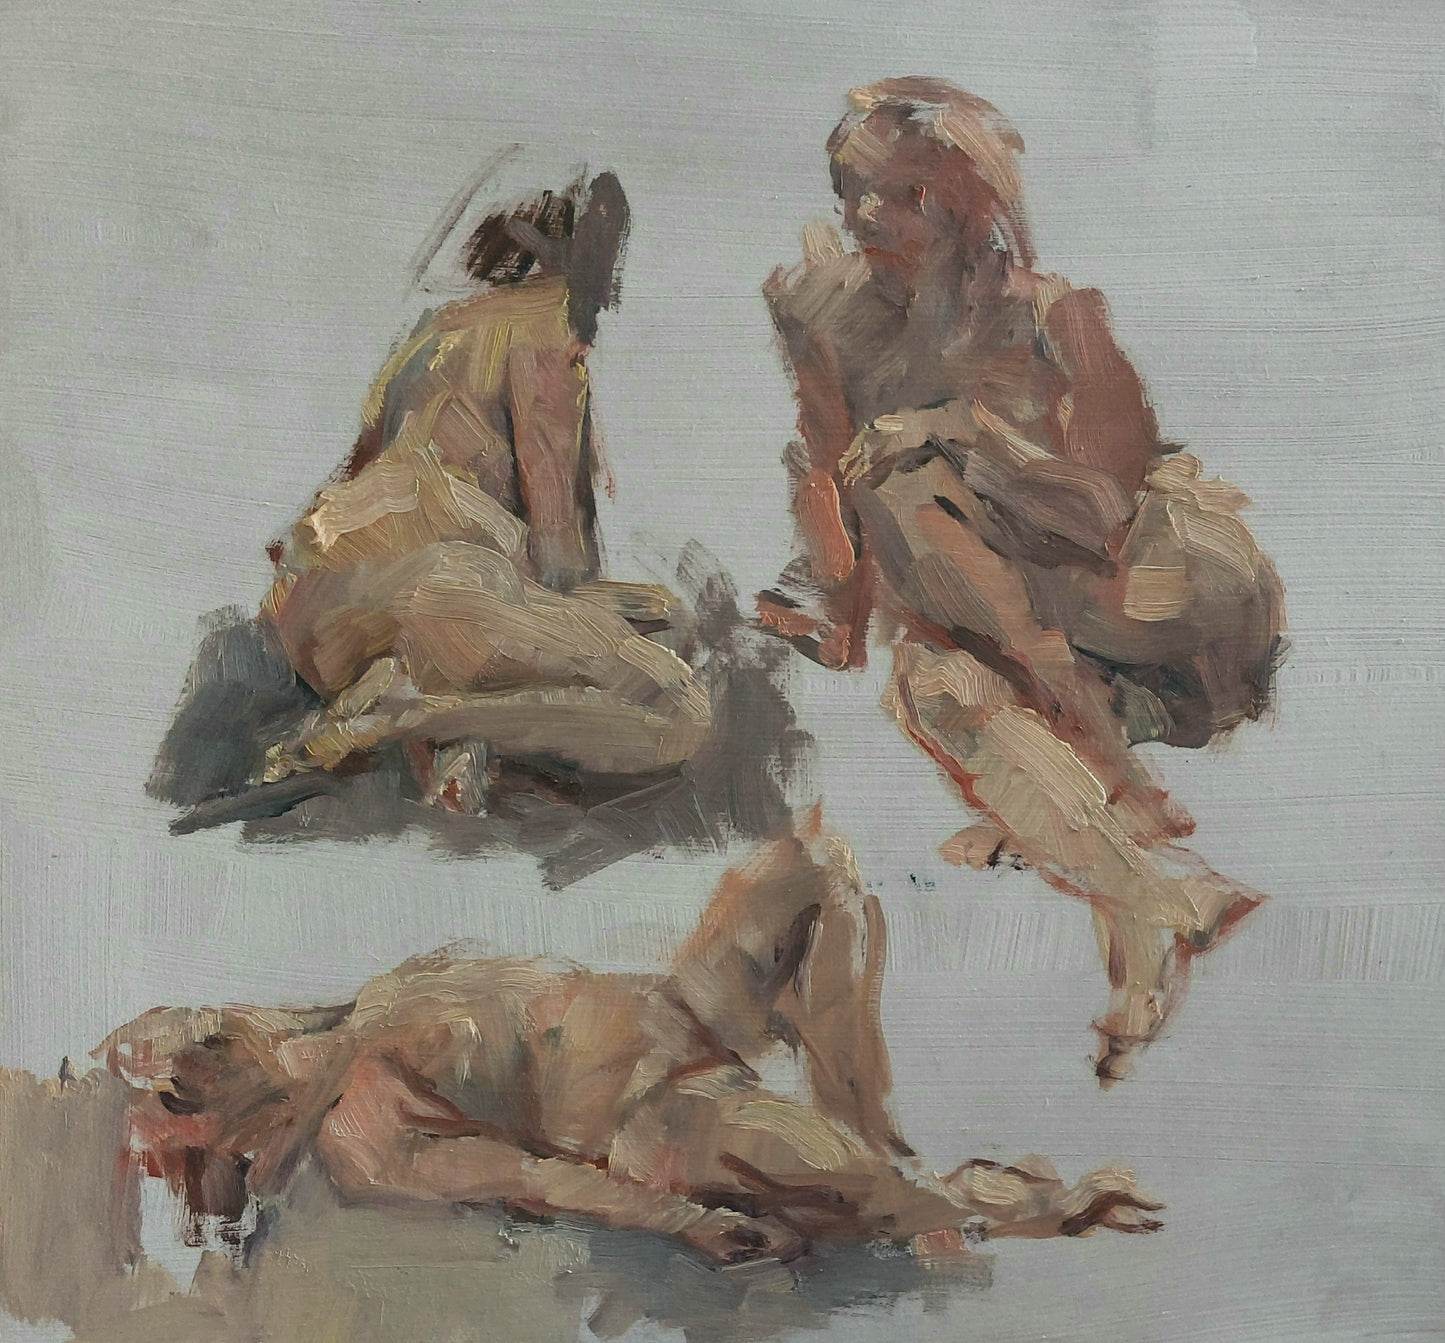 ‘Figure studies’ 2010
oil on board 
50x61cm